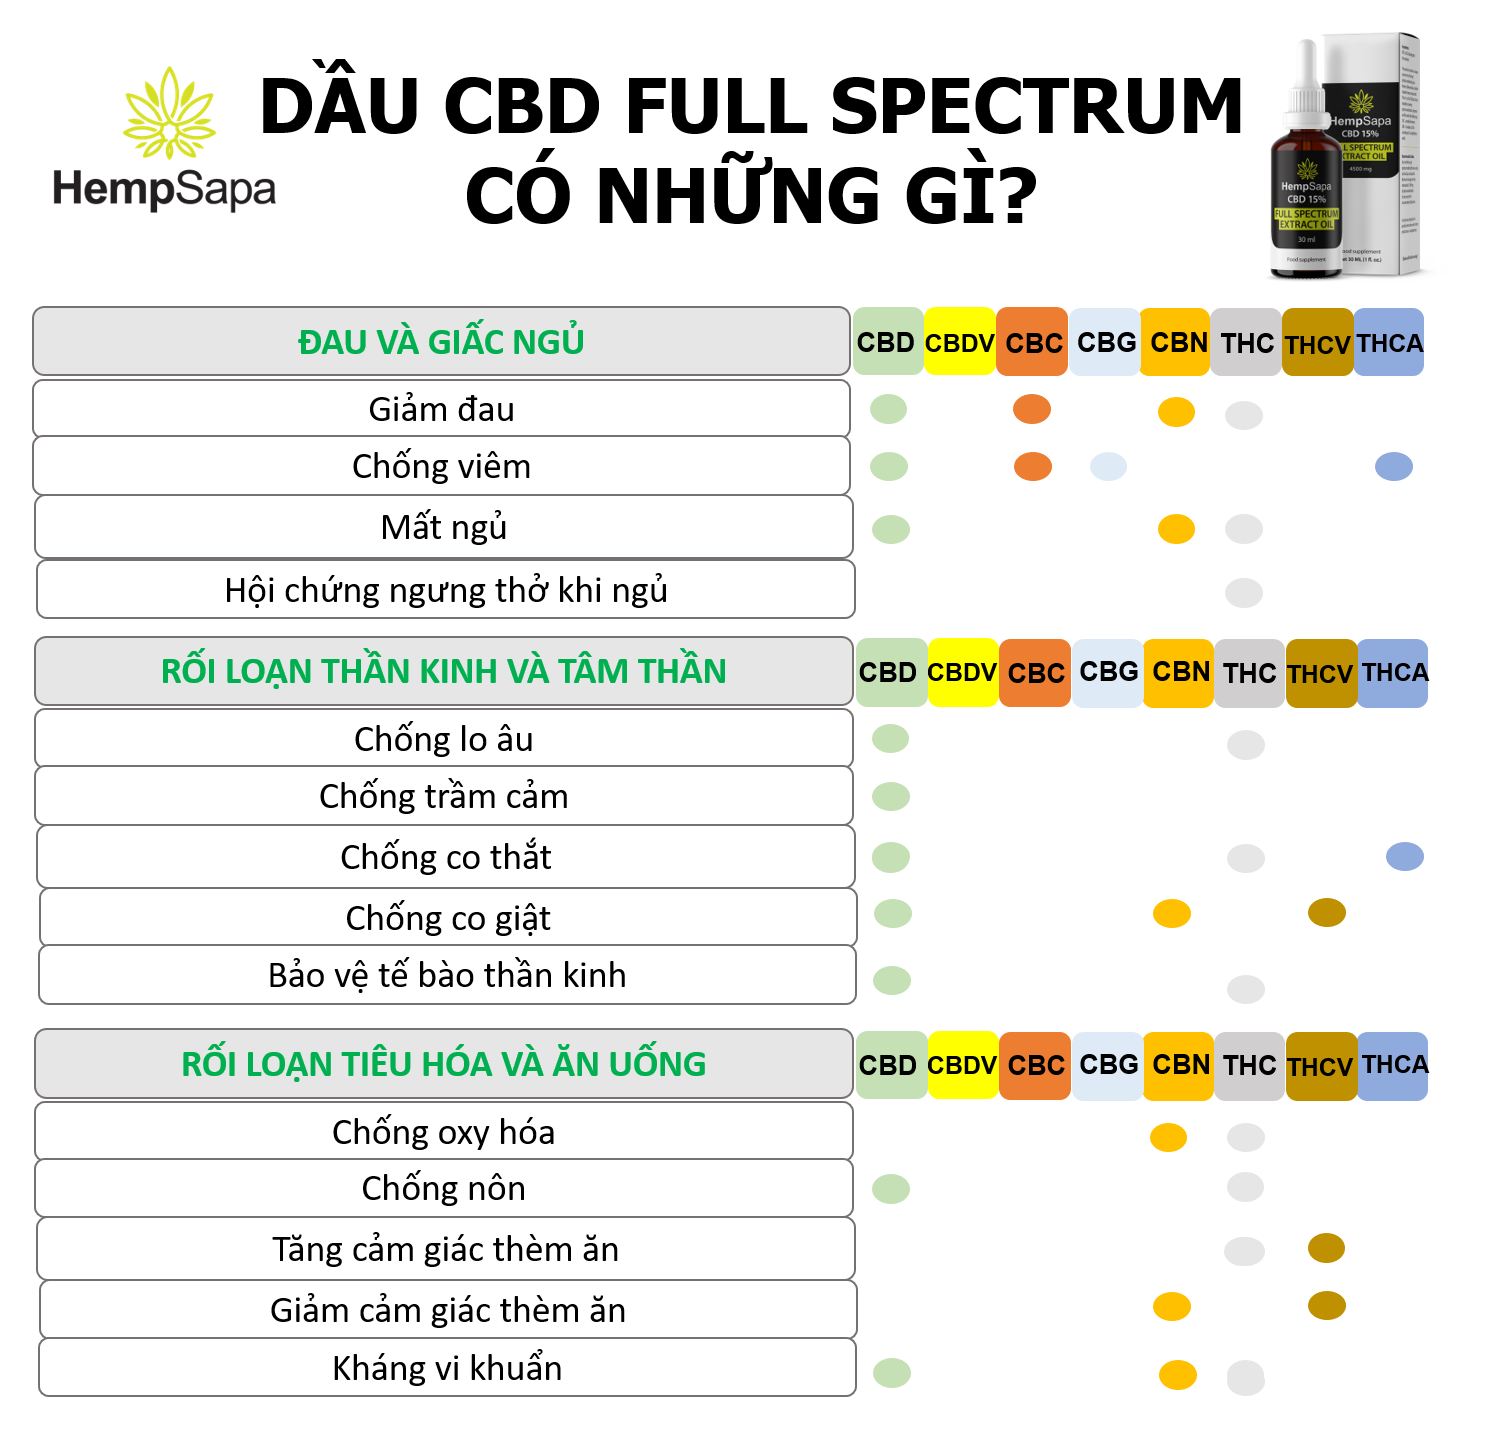 Dầu CBD Full Spectrum có những gì?